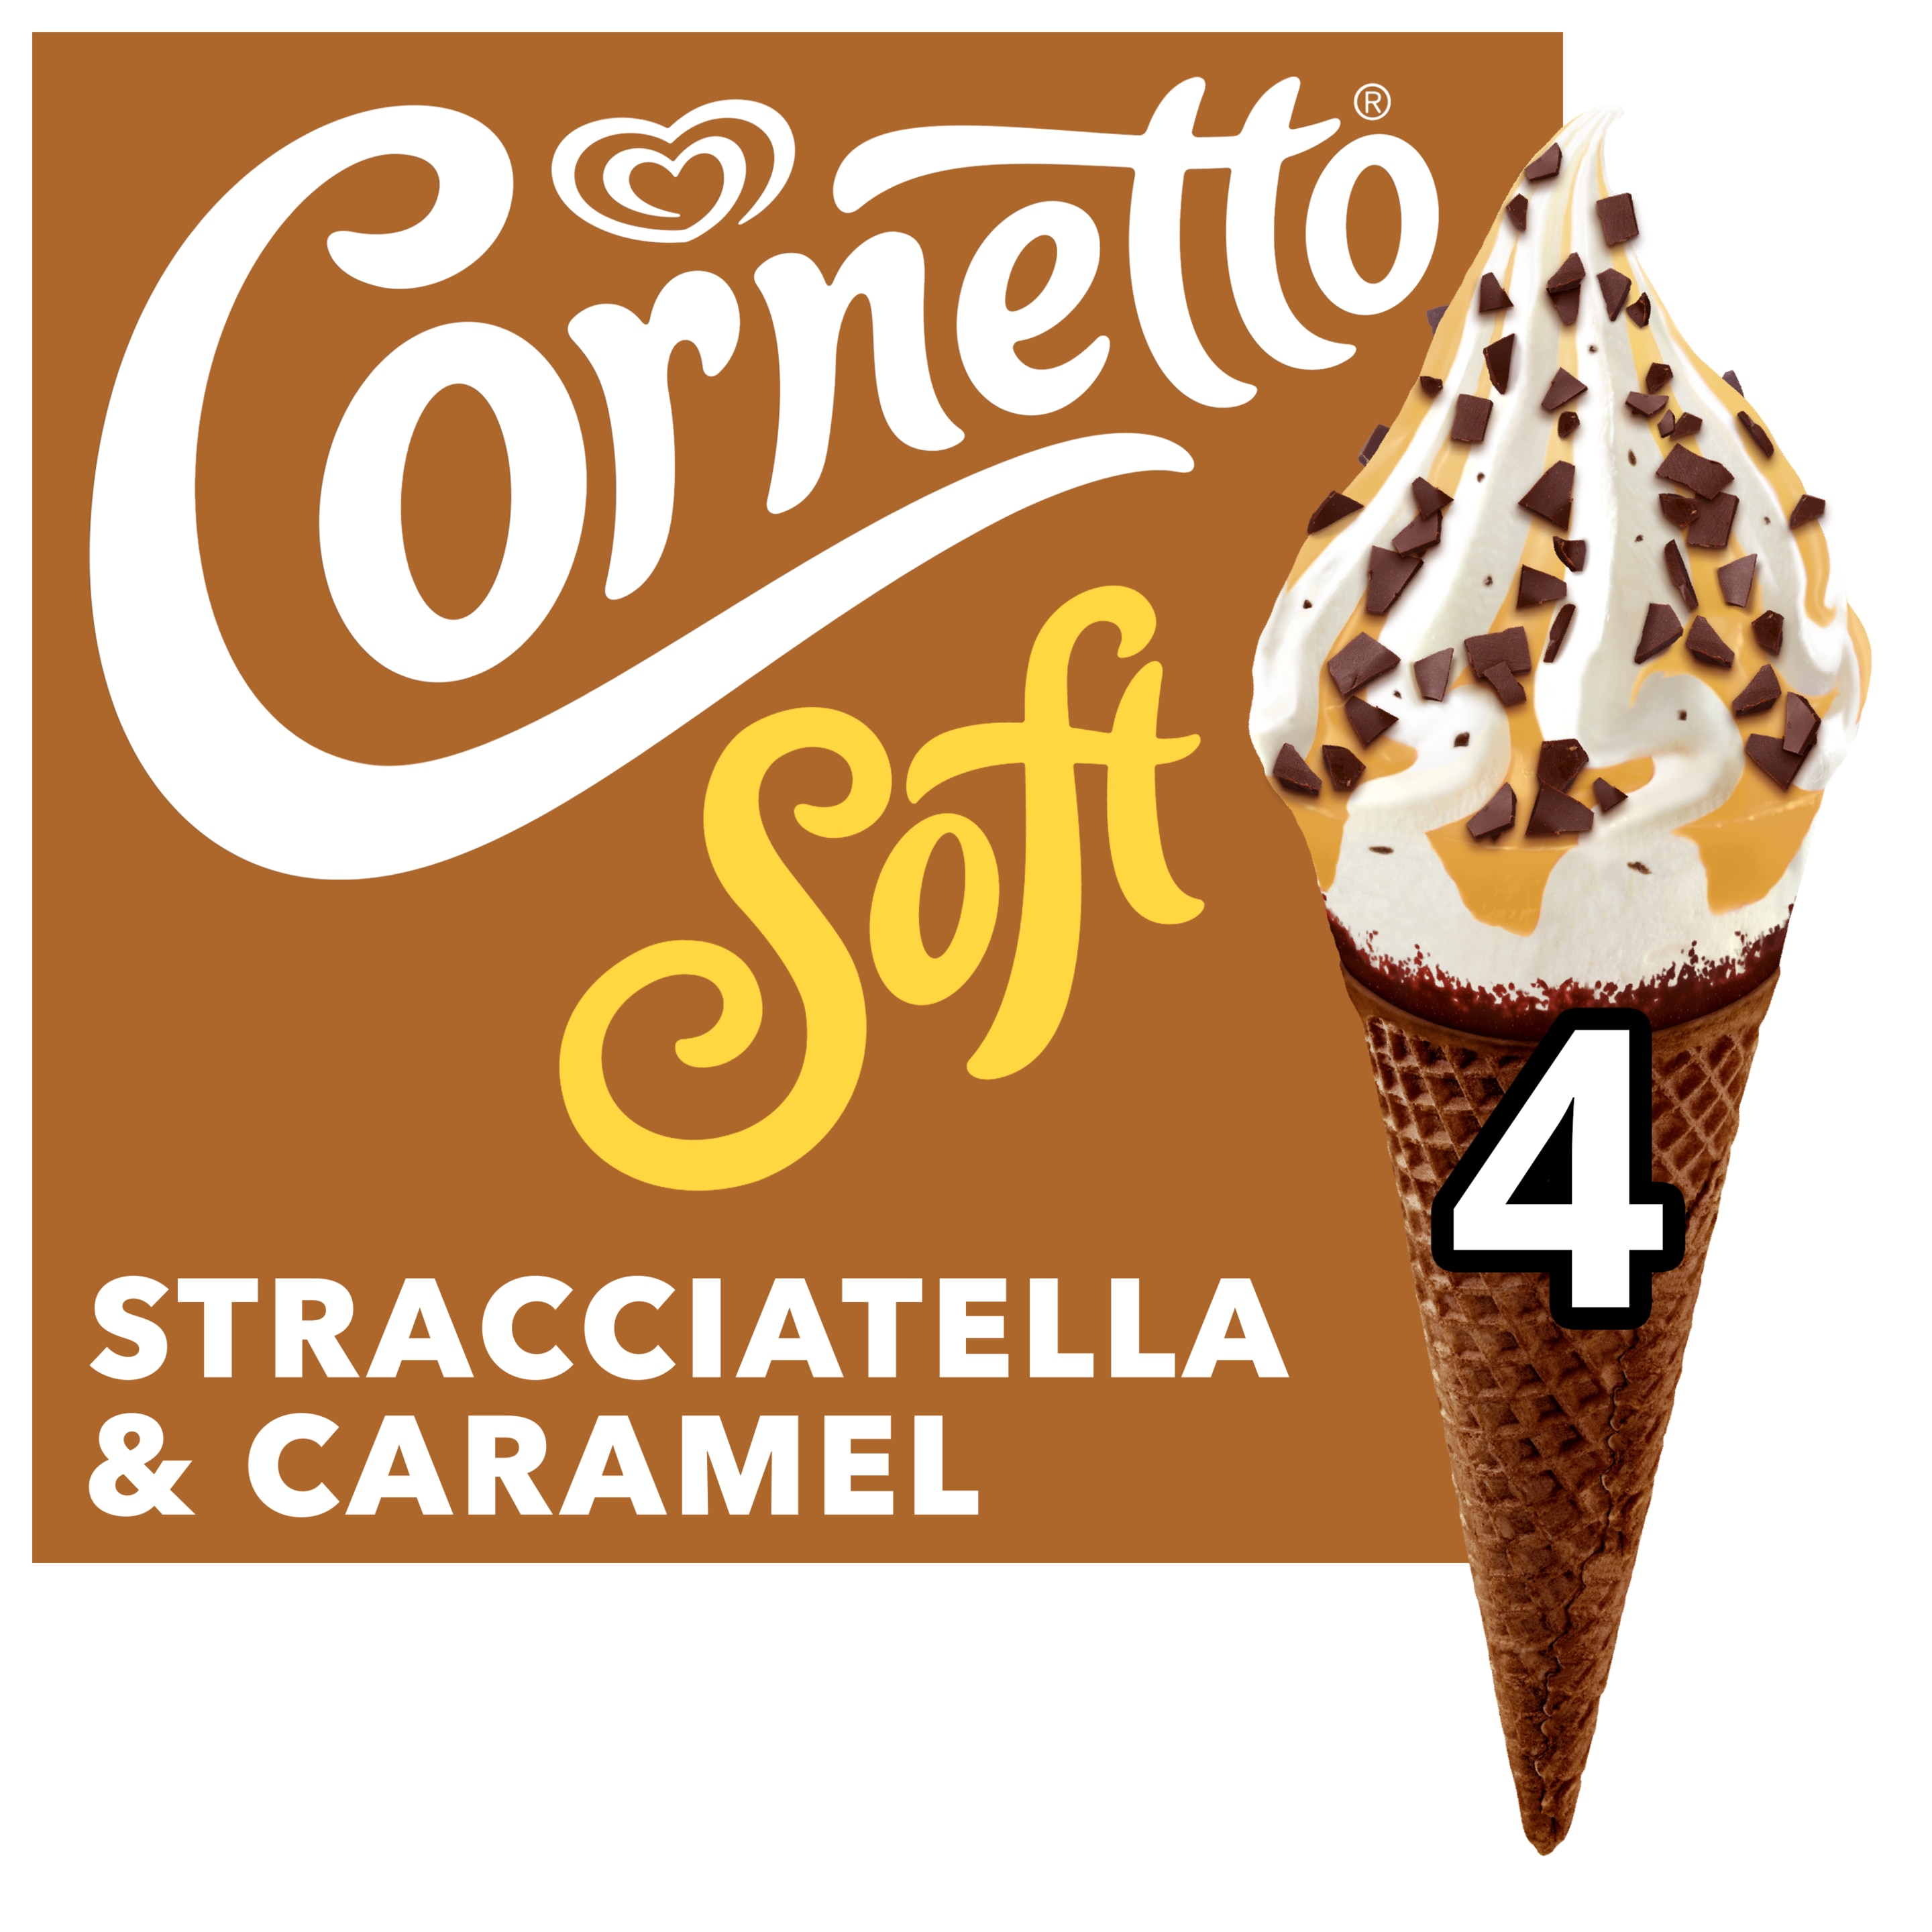 Cornetto Soft Stracciatella 4 x 140 ml - Lusso Schweiz